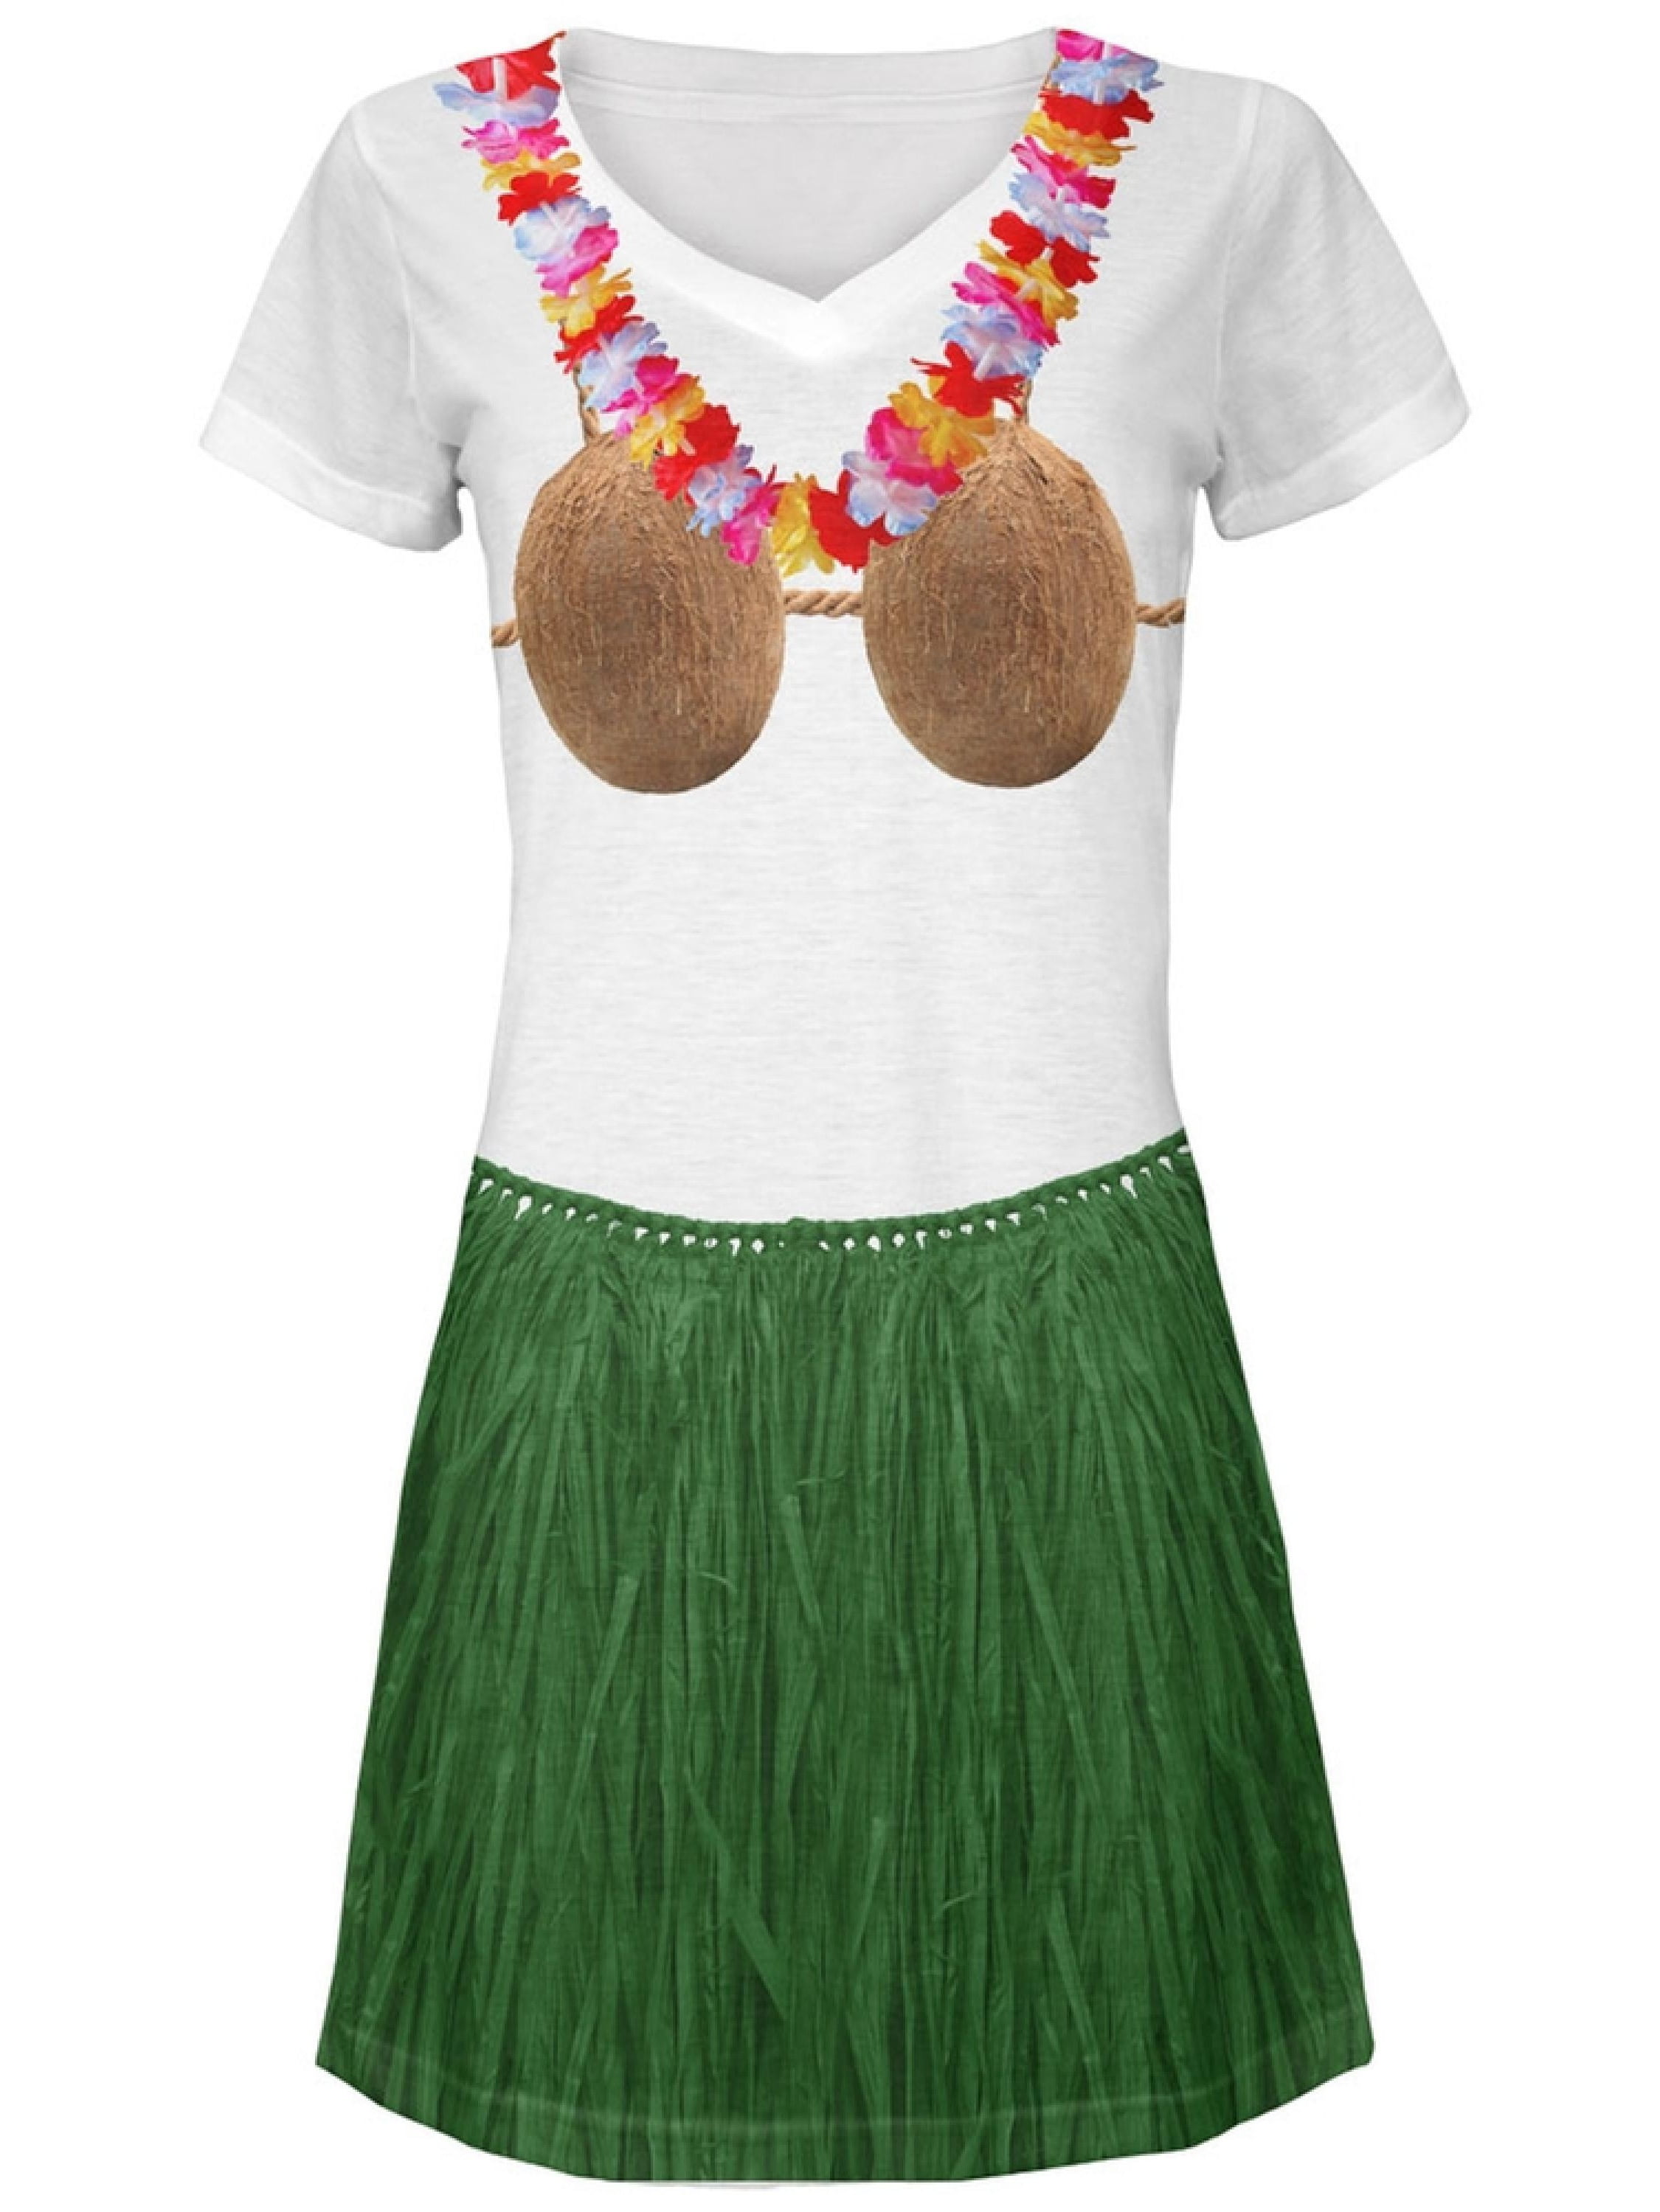 Hawaiian Grass Skirt Flower Leis Coconut Bra Adult Child Fancy Dress  Accessories